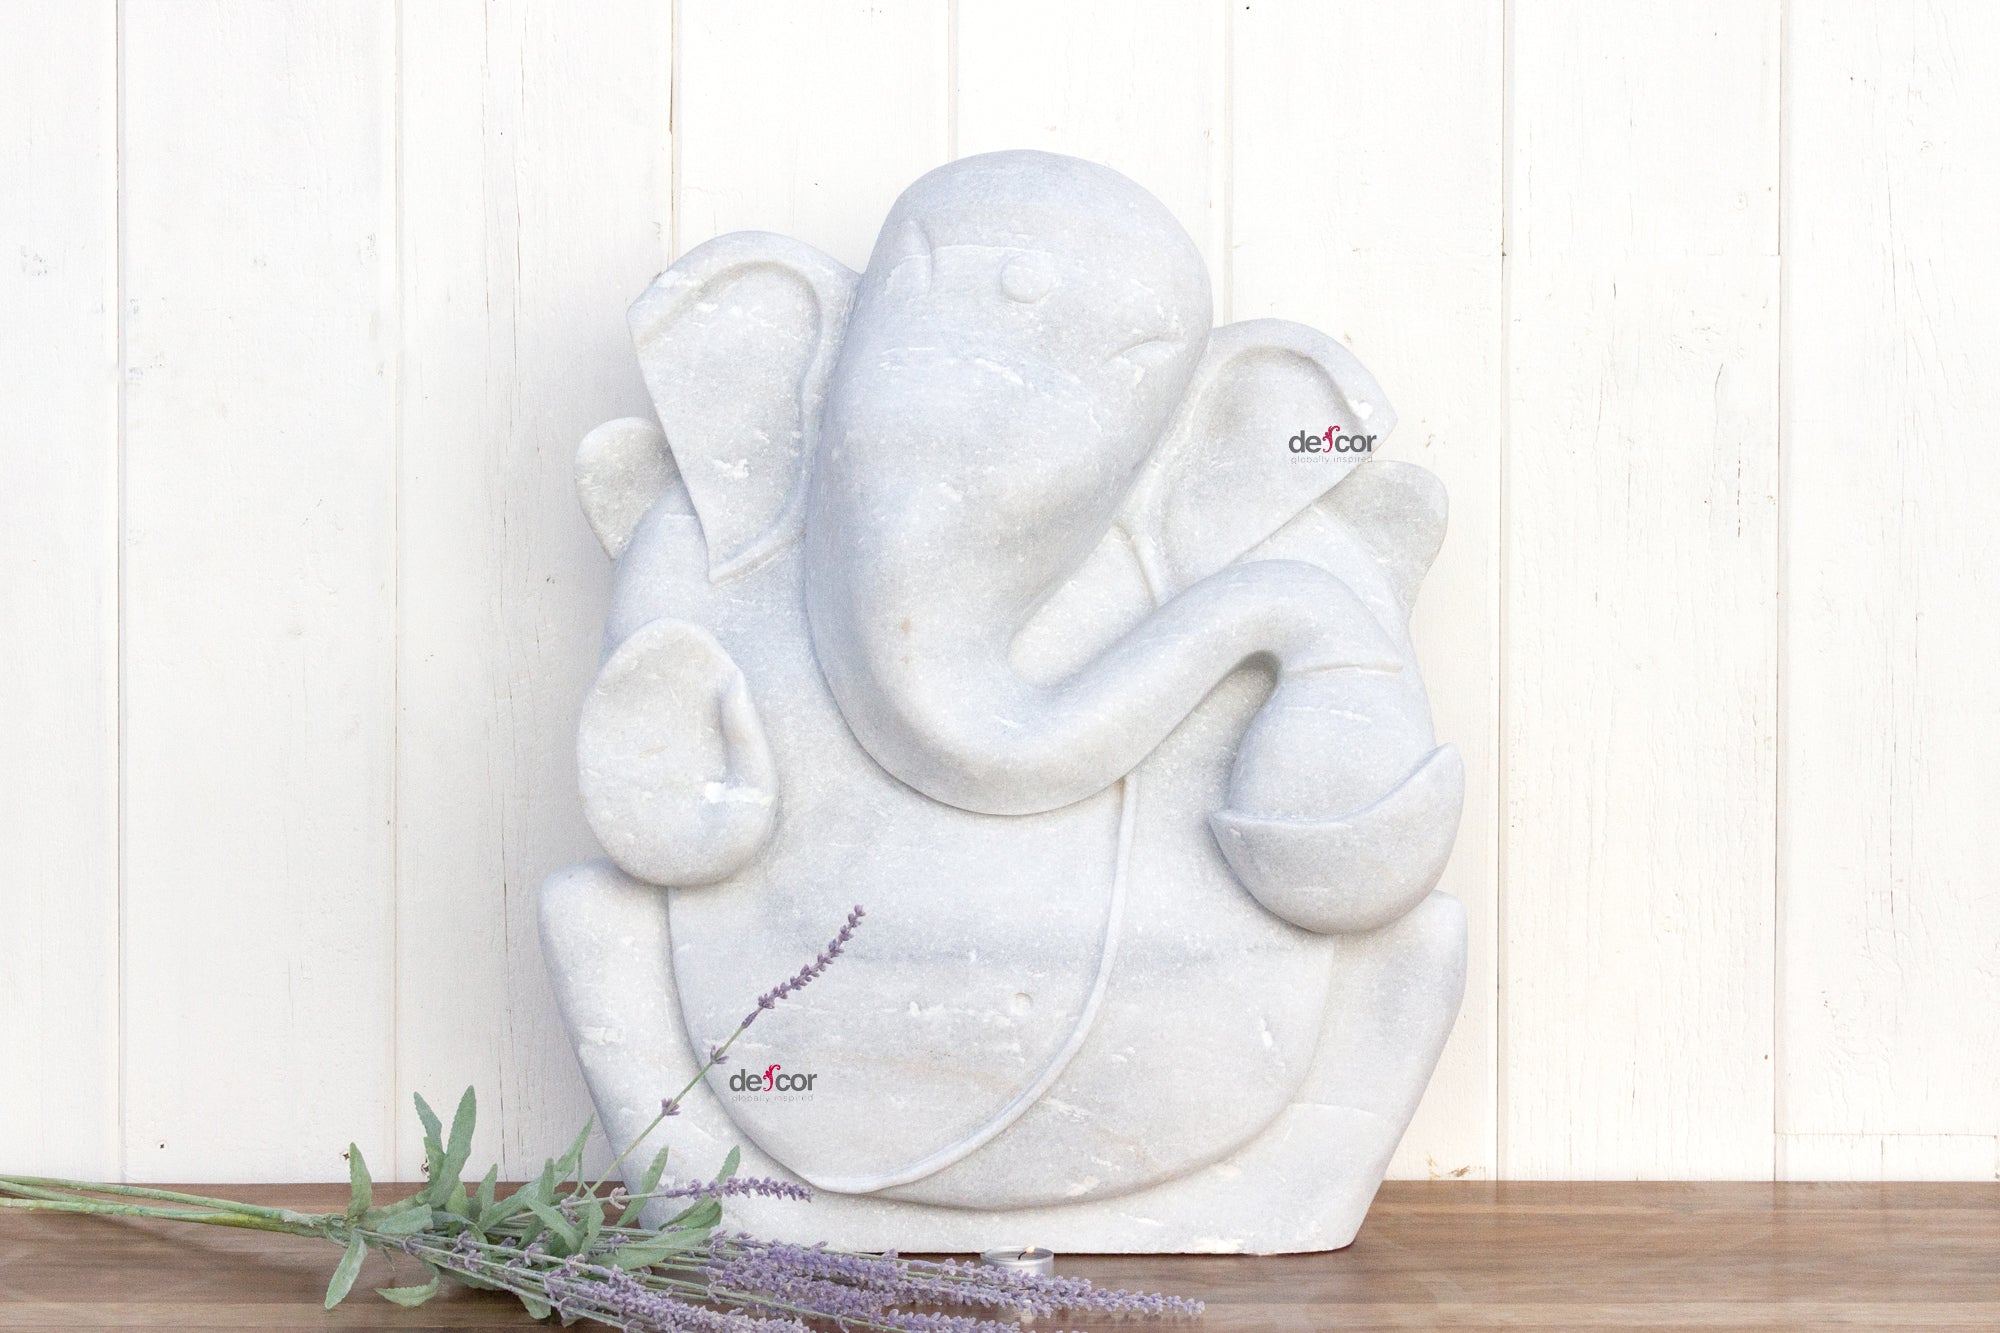 DE-COR | Ispirazione globale, Ganesh da giardino in marmo splendidamente scolpito